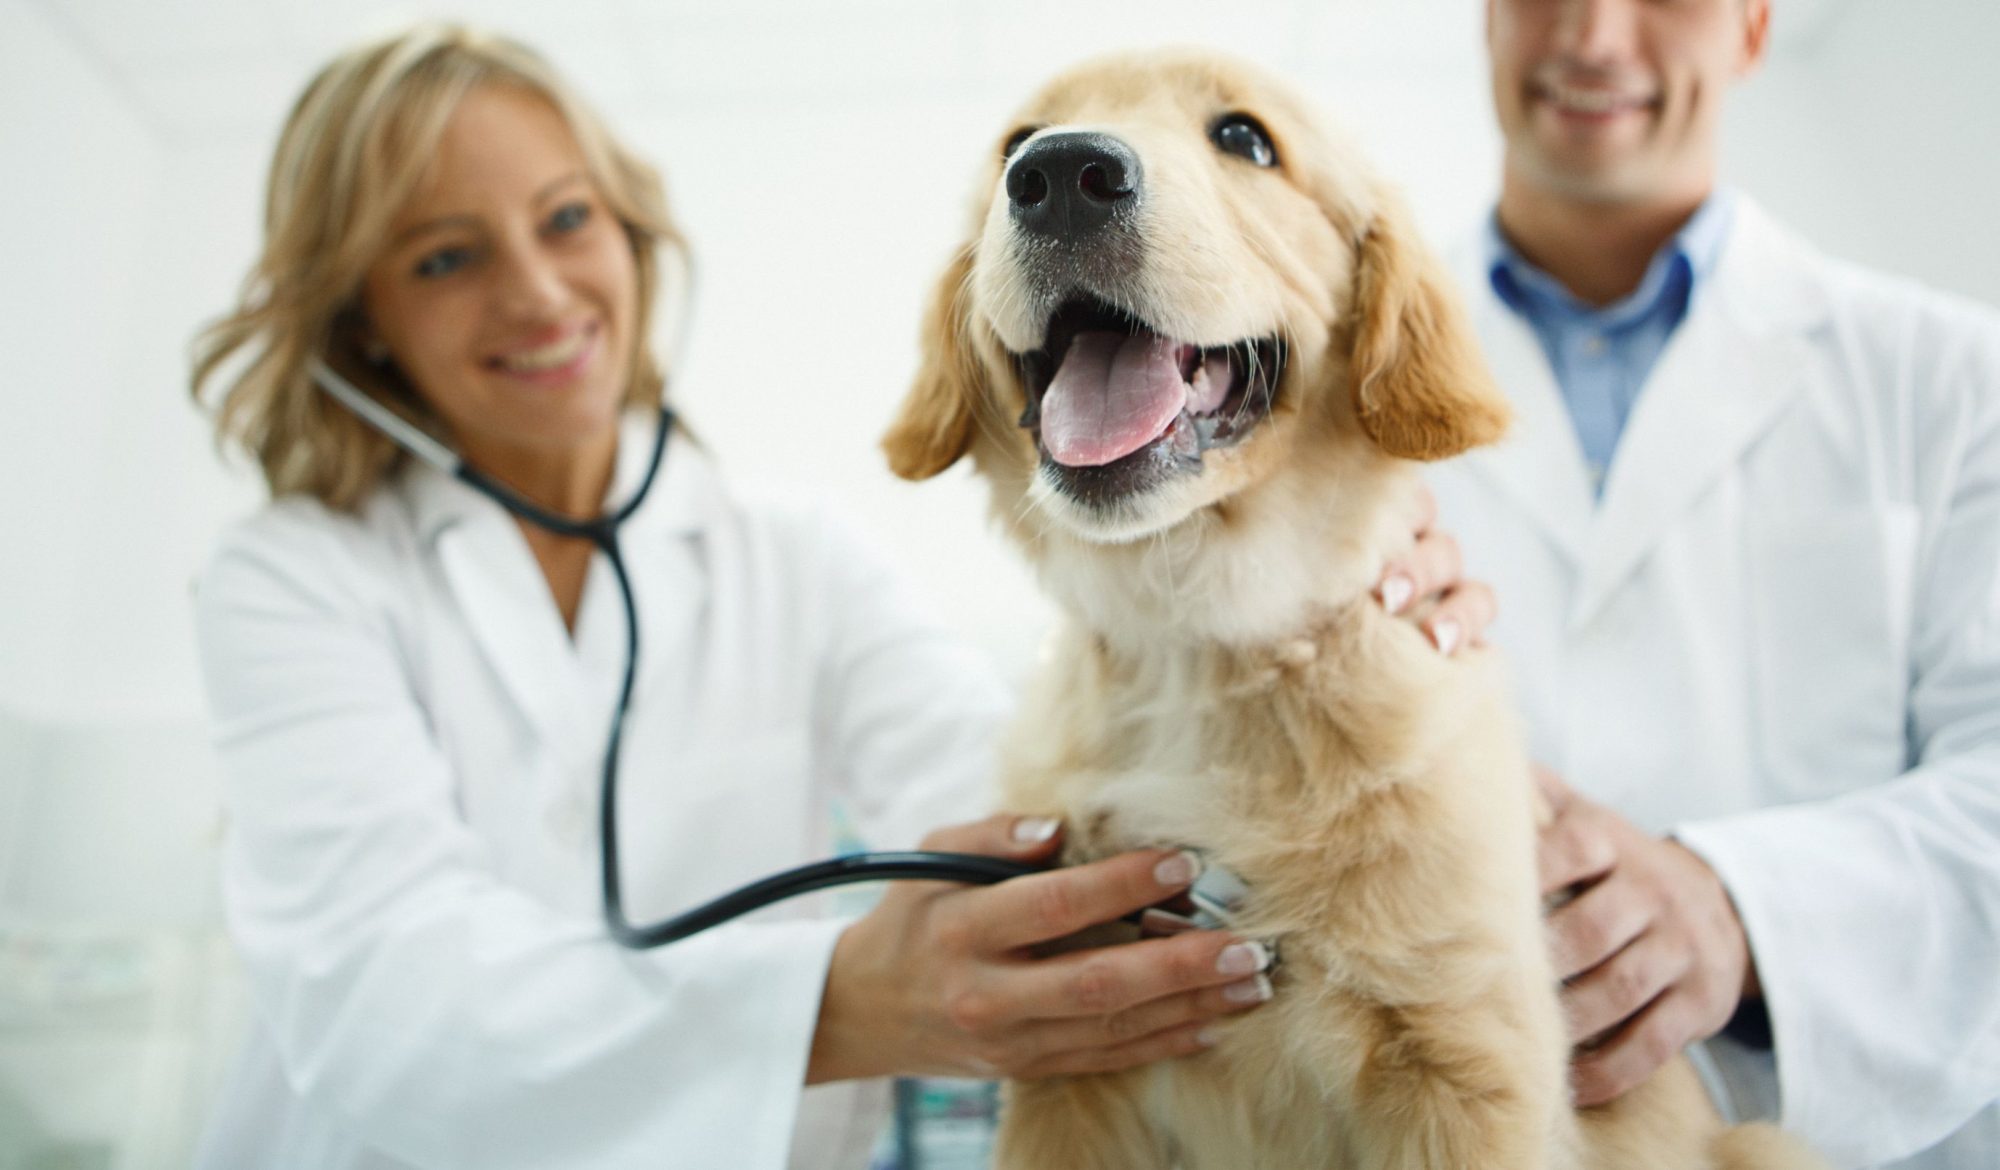 Dog at vet check-up.